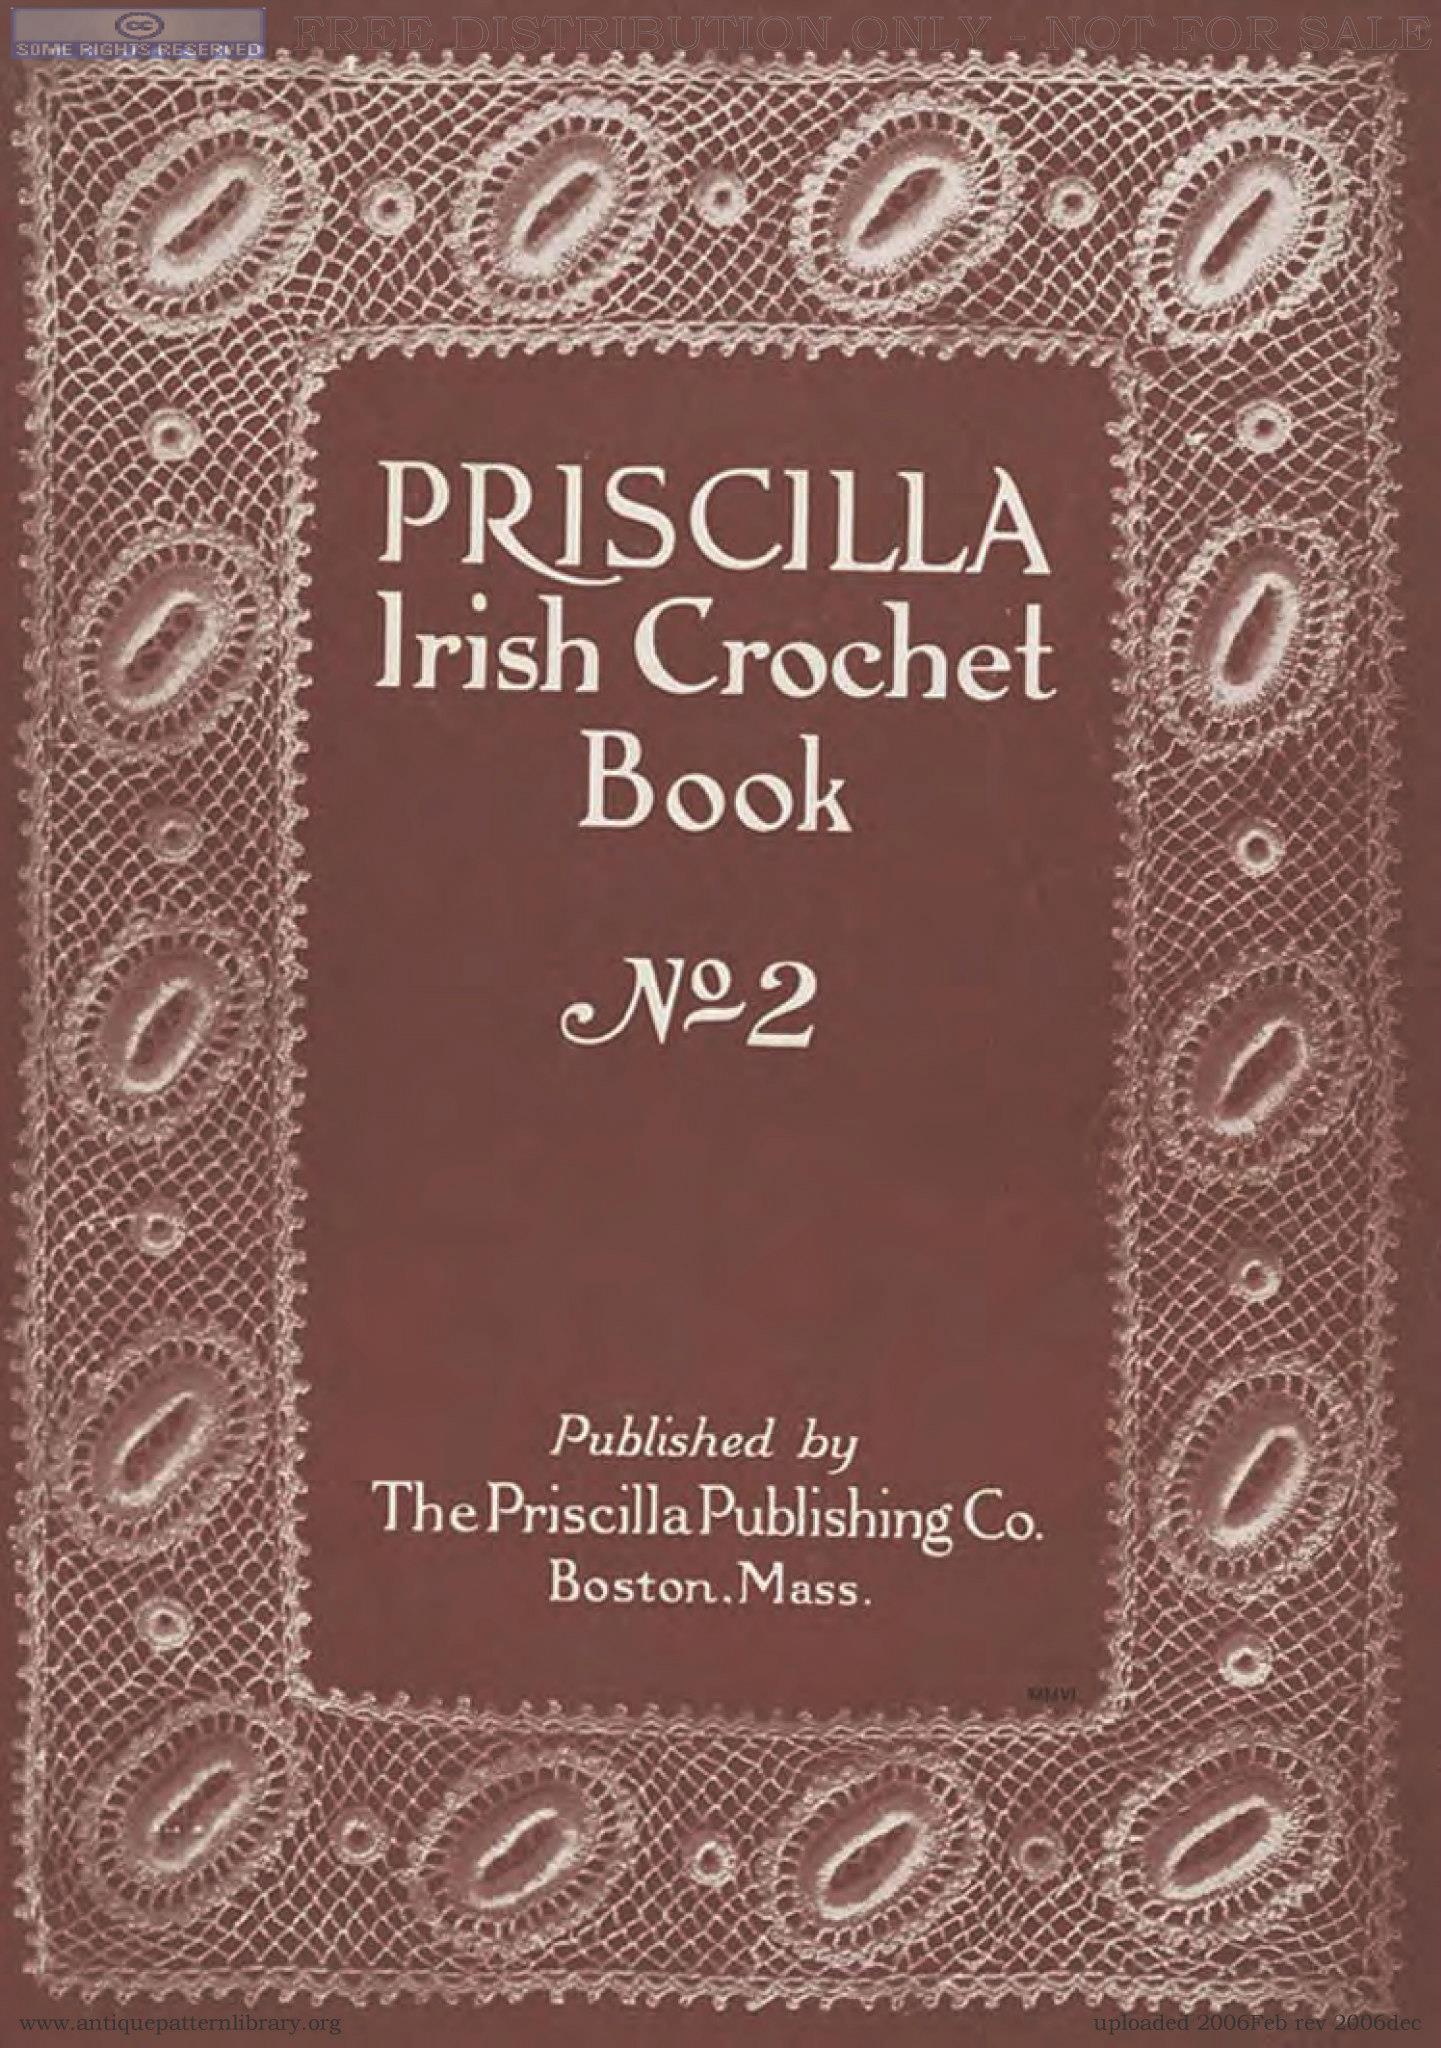 Crochet Book Review - Priscilla Irish Crochet Book 1 & 2